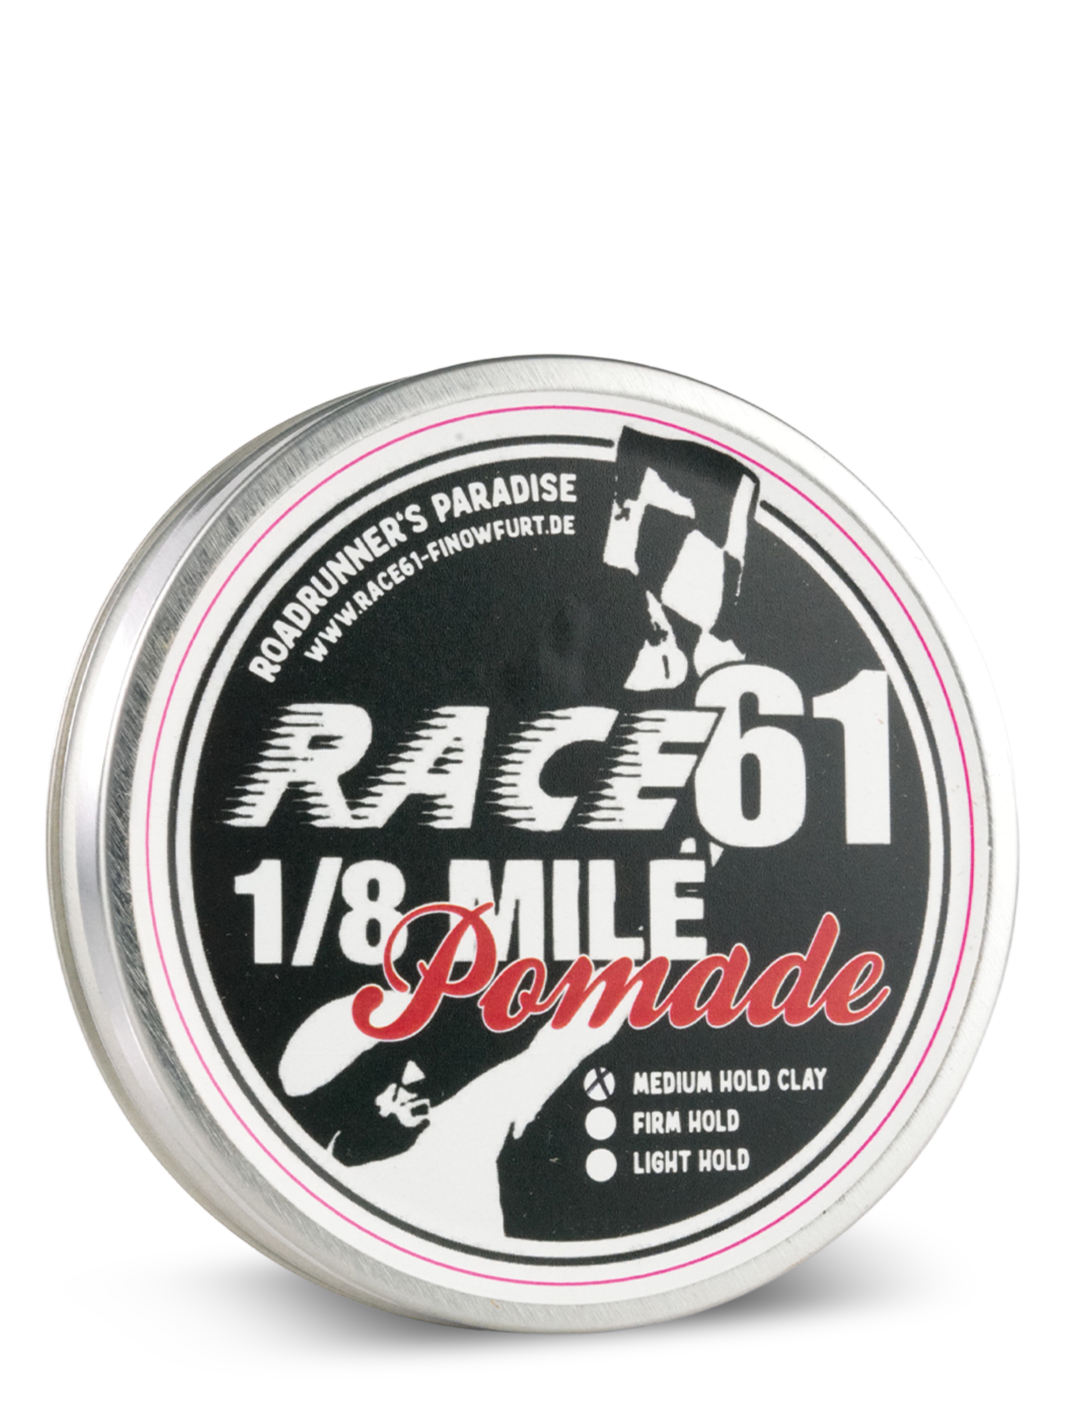 Fettkopp RACE61 1/8 Mile Pomade